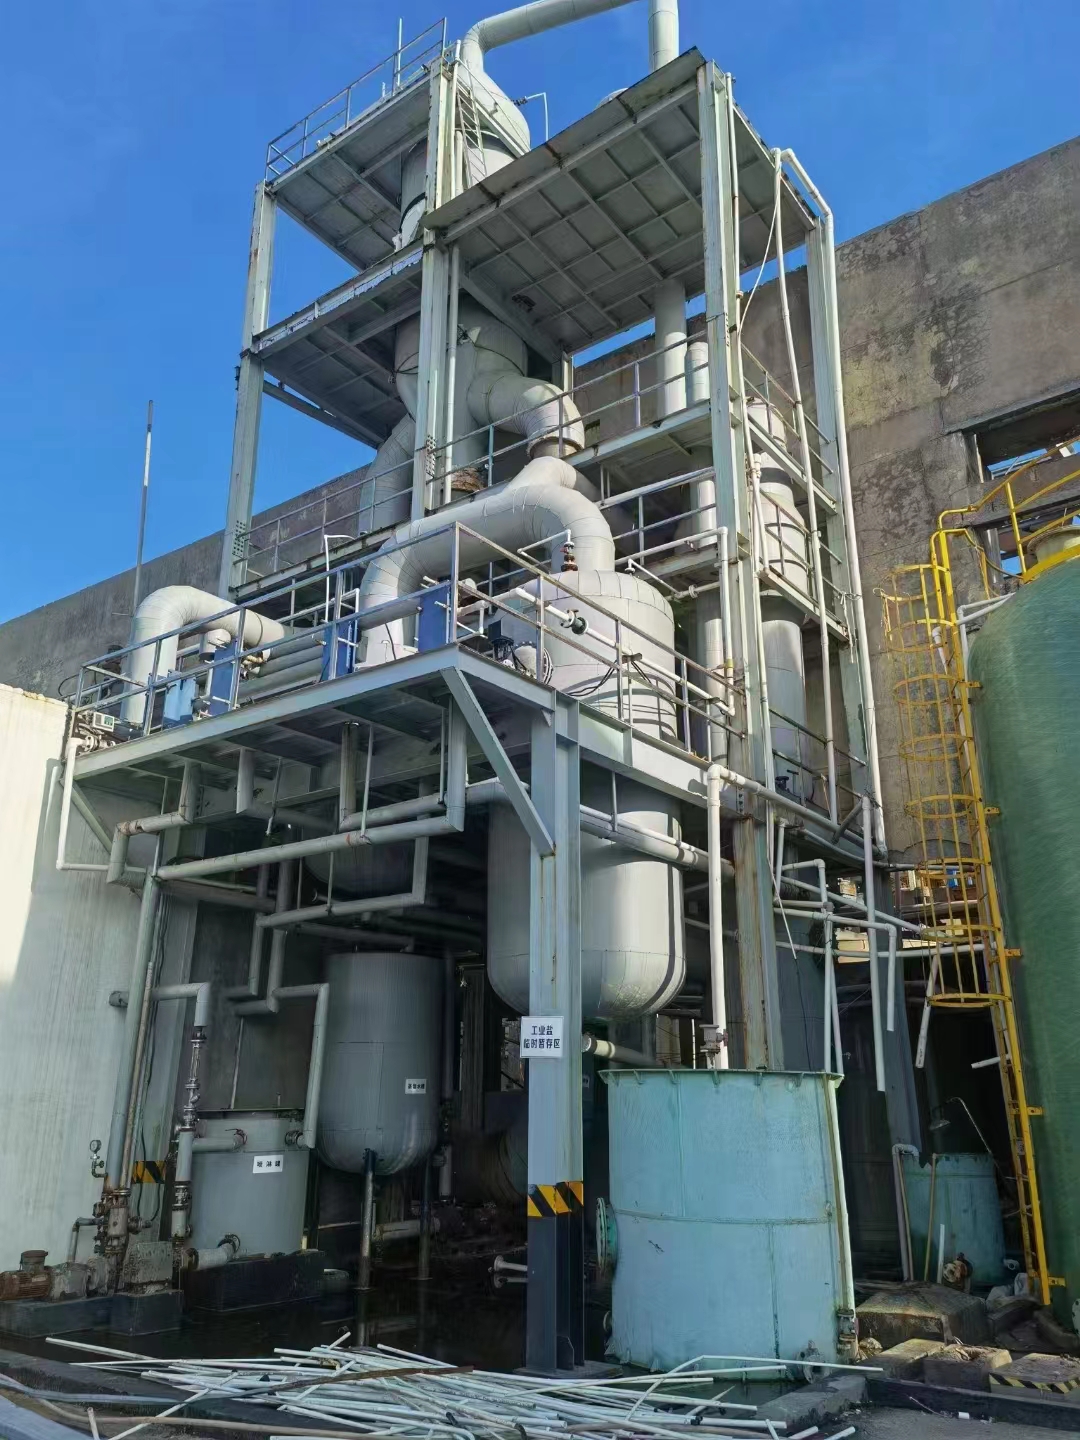 转让 三效5000升强制循环蒸发器 二手废水结晶蒸发器 MVR节能蒸发器 资料齐全